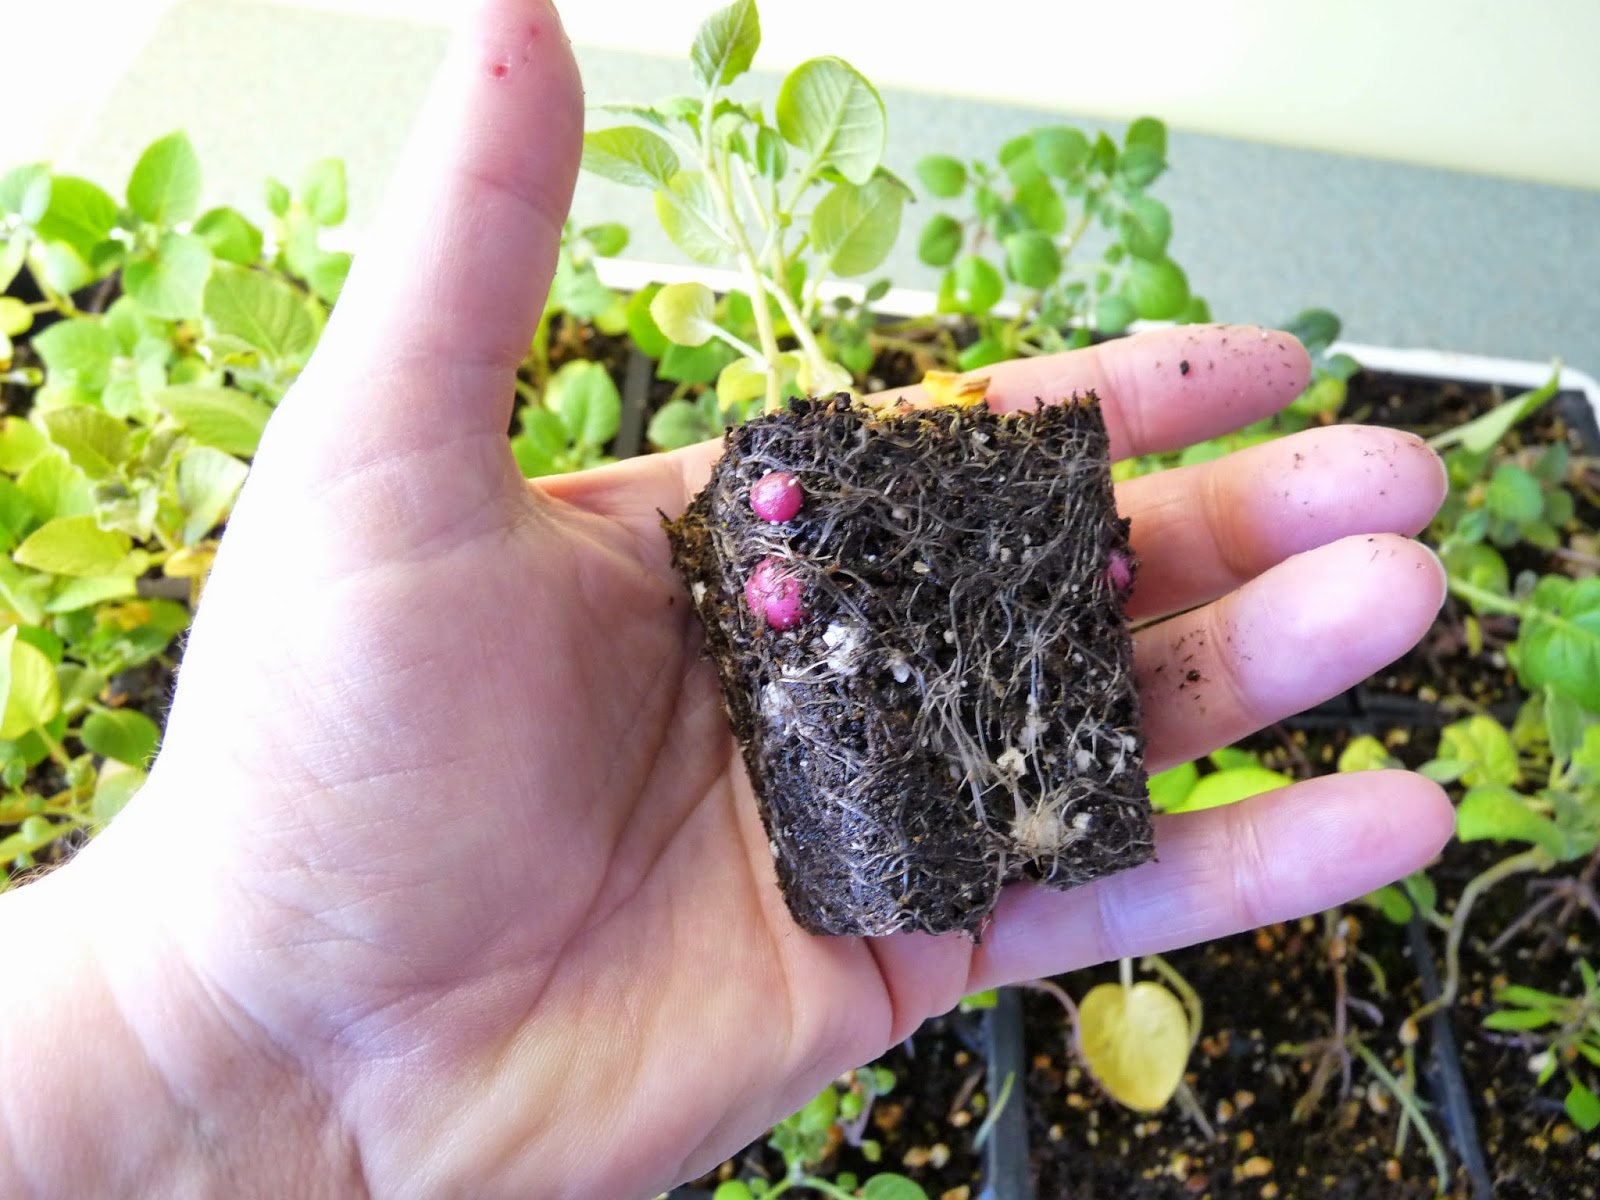 Семена картофеля: как выращивать в домашних условиях, когда собирать